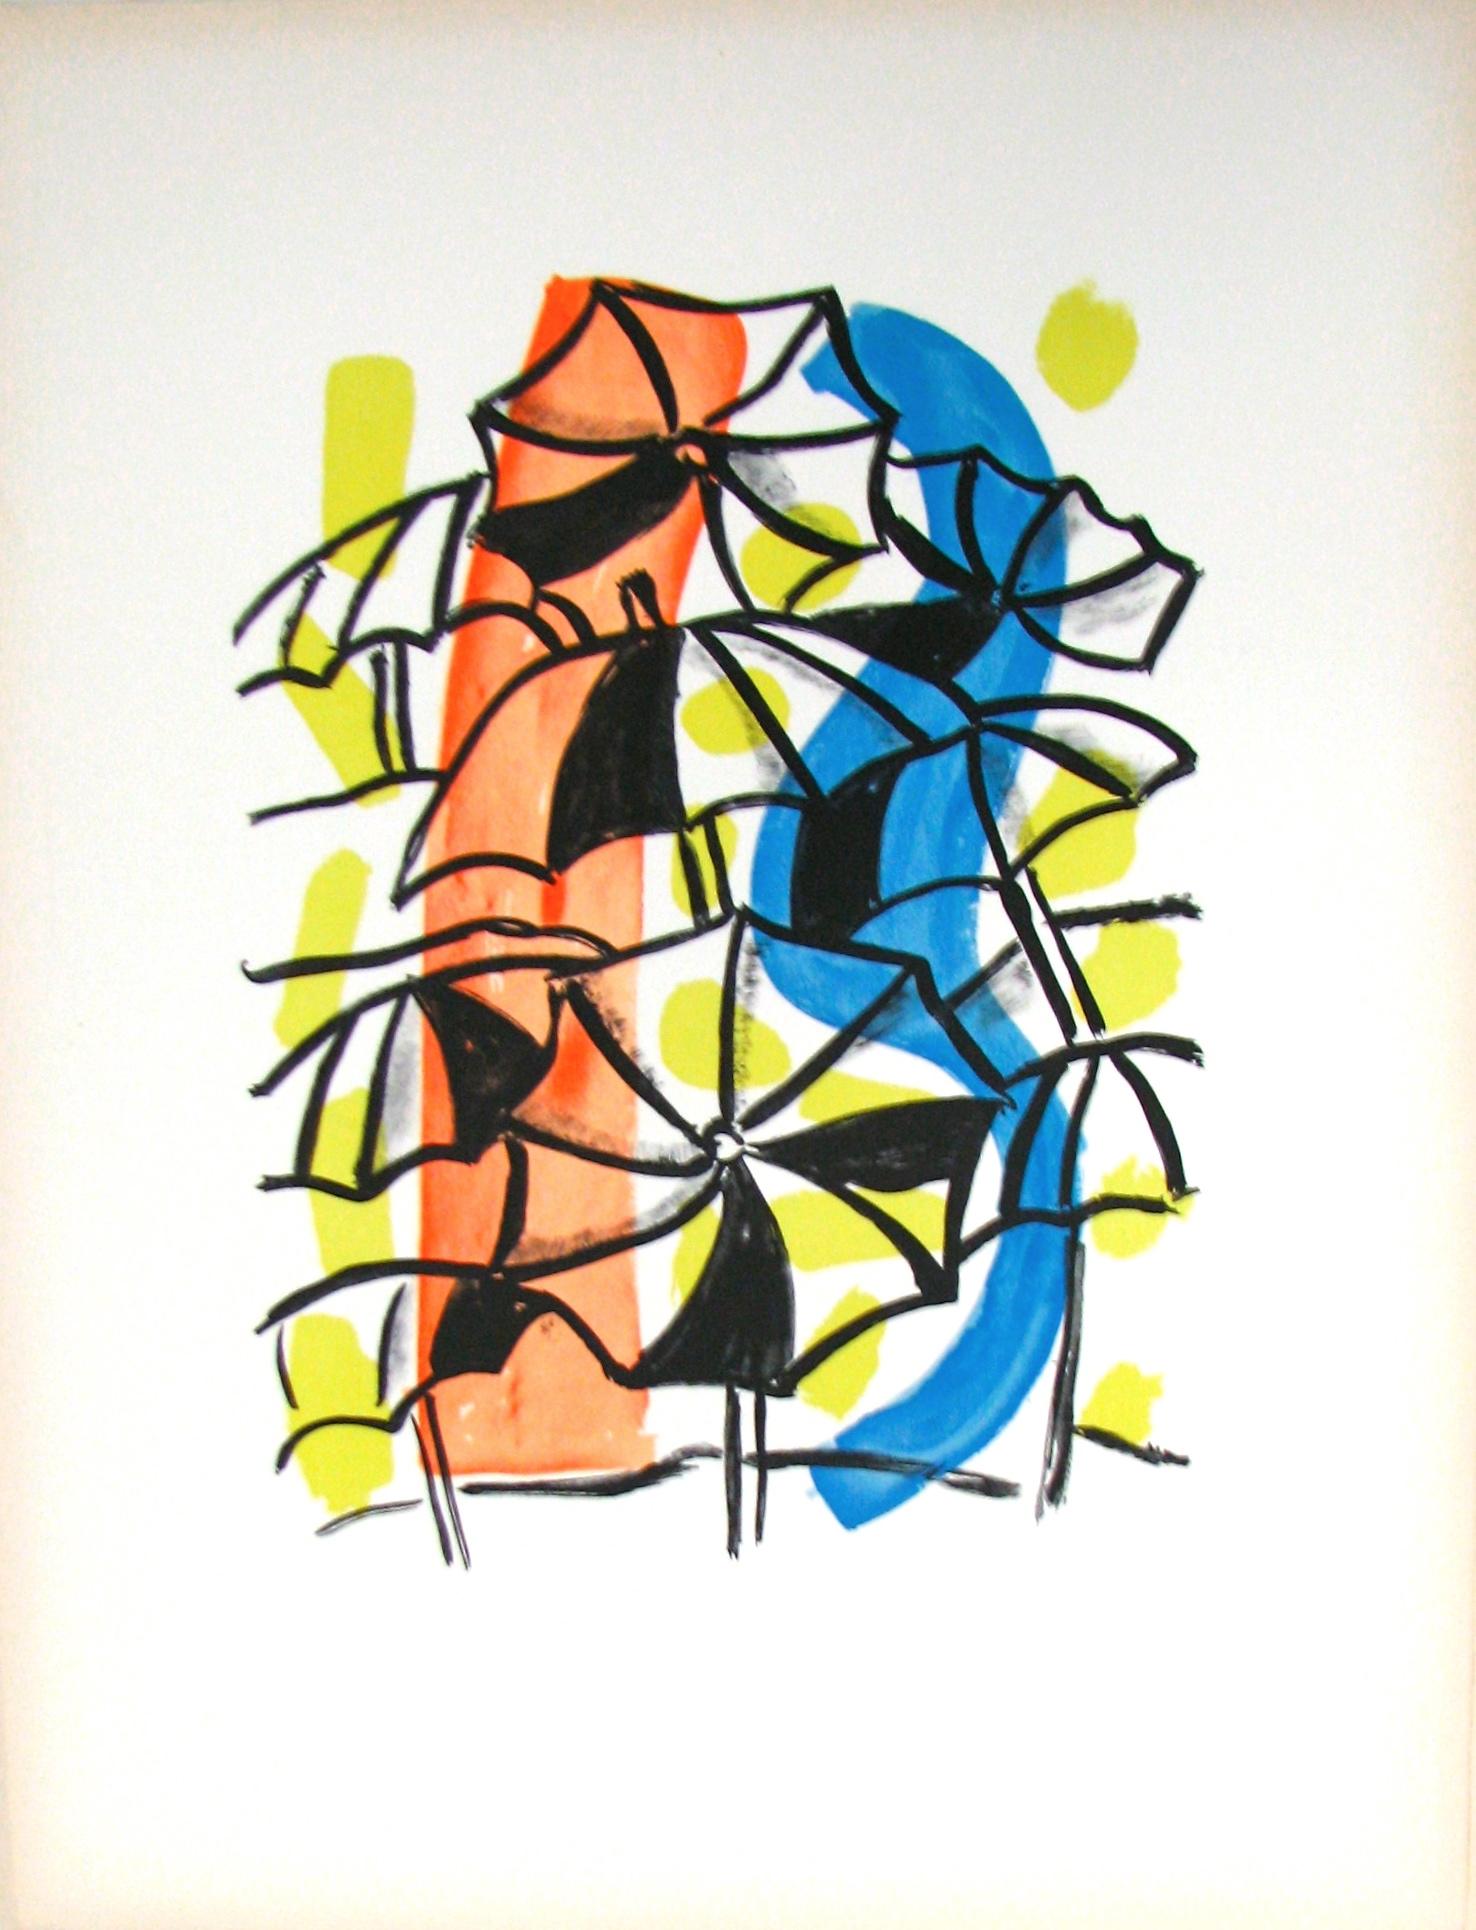 Les Parapluies - "La Ville" (after) Fernand Leger, 1959